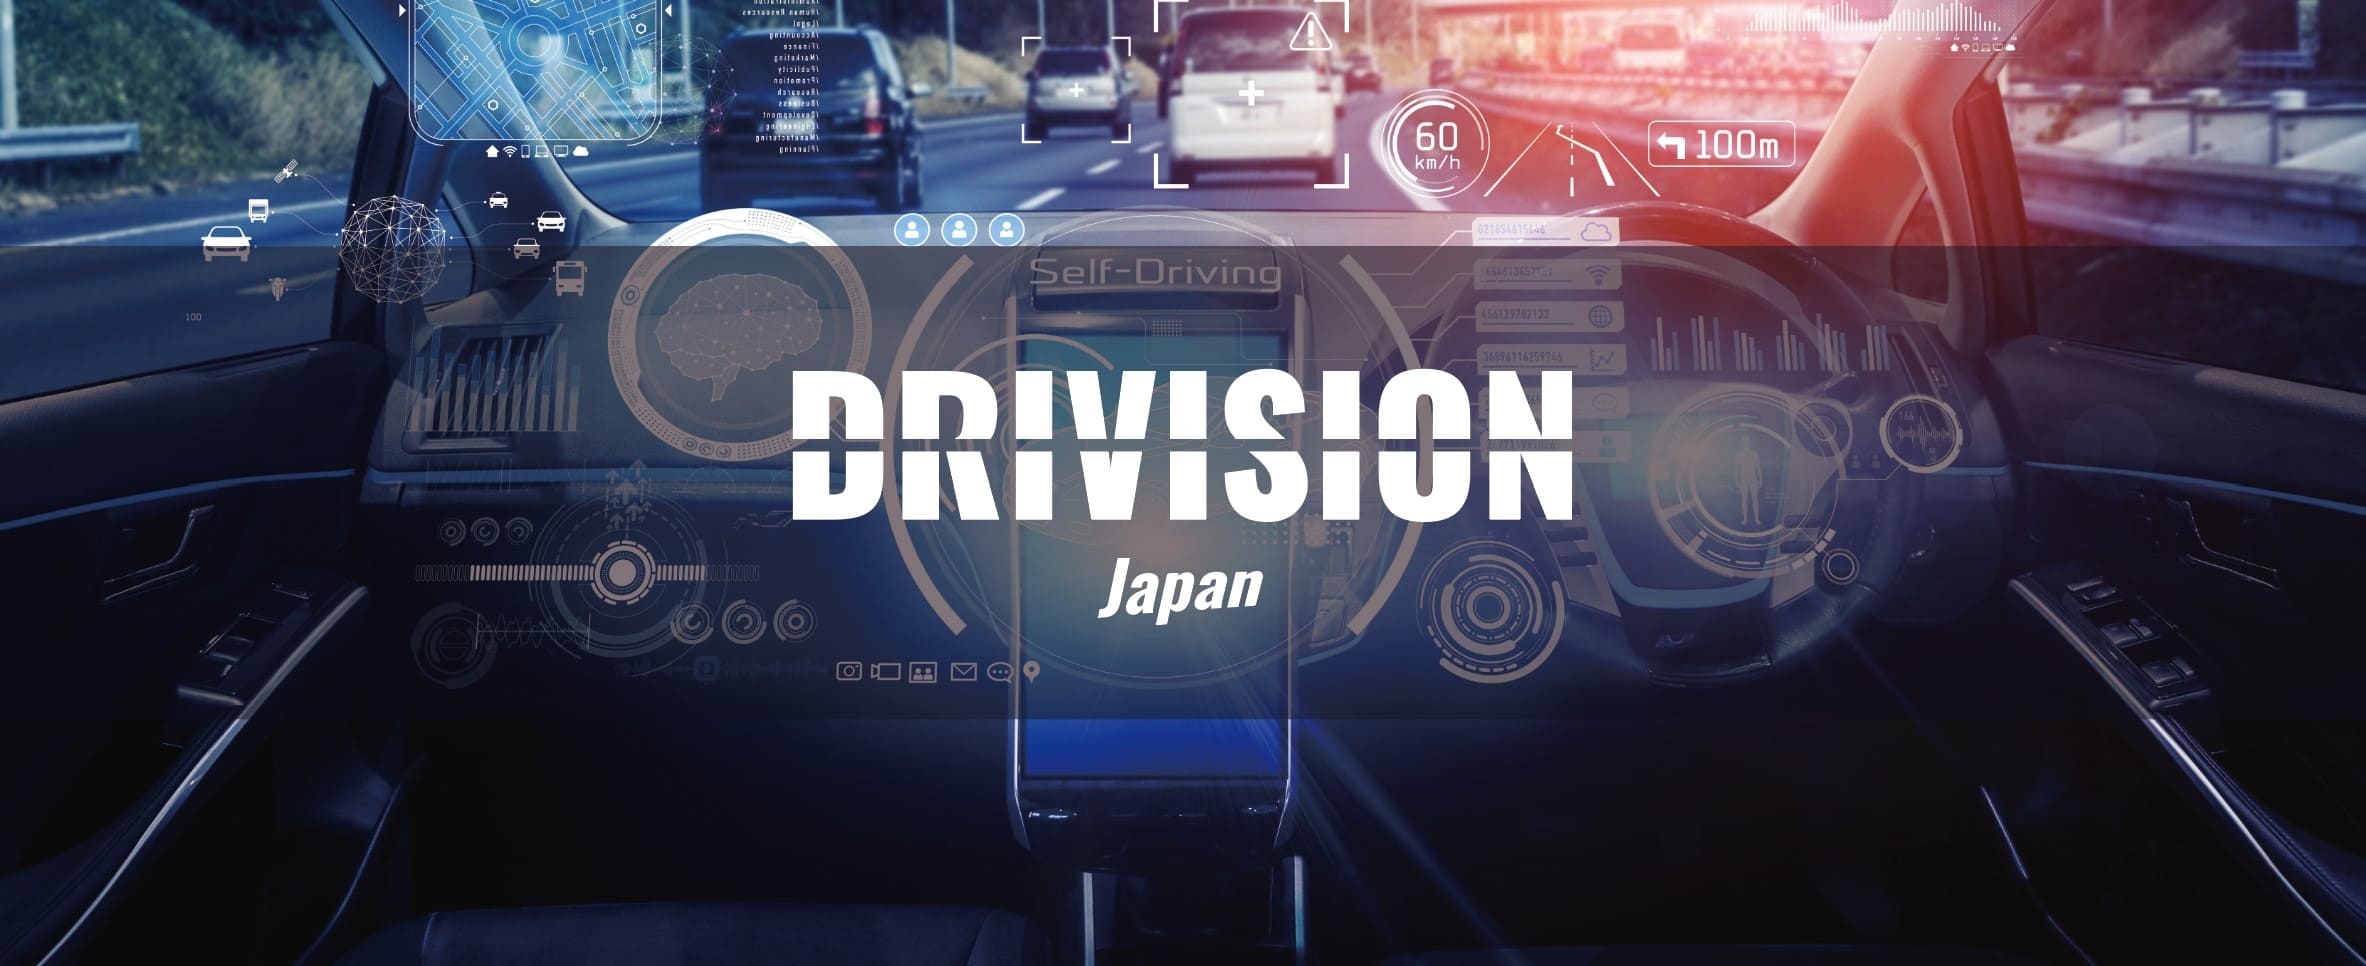 DRIVISION Japan（ドリビジョン ジャパン）